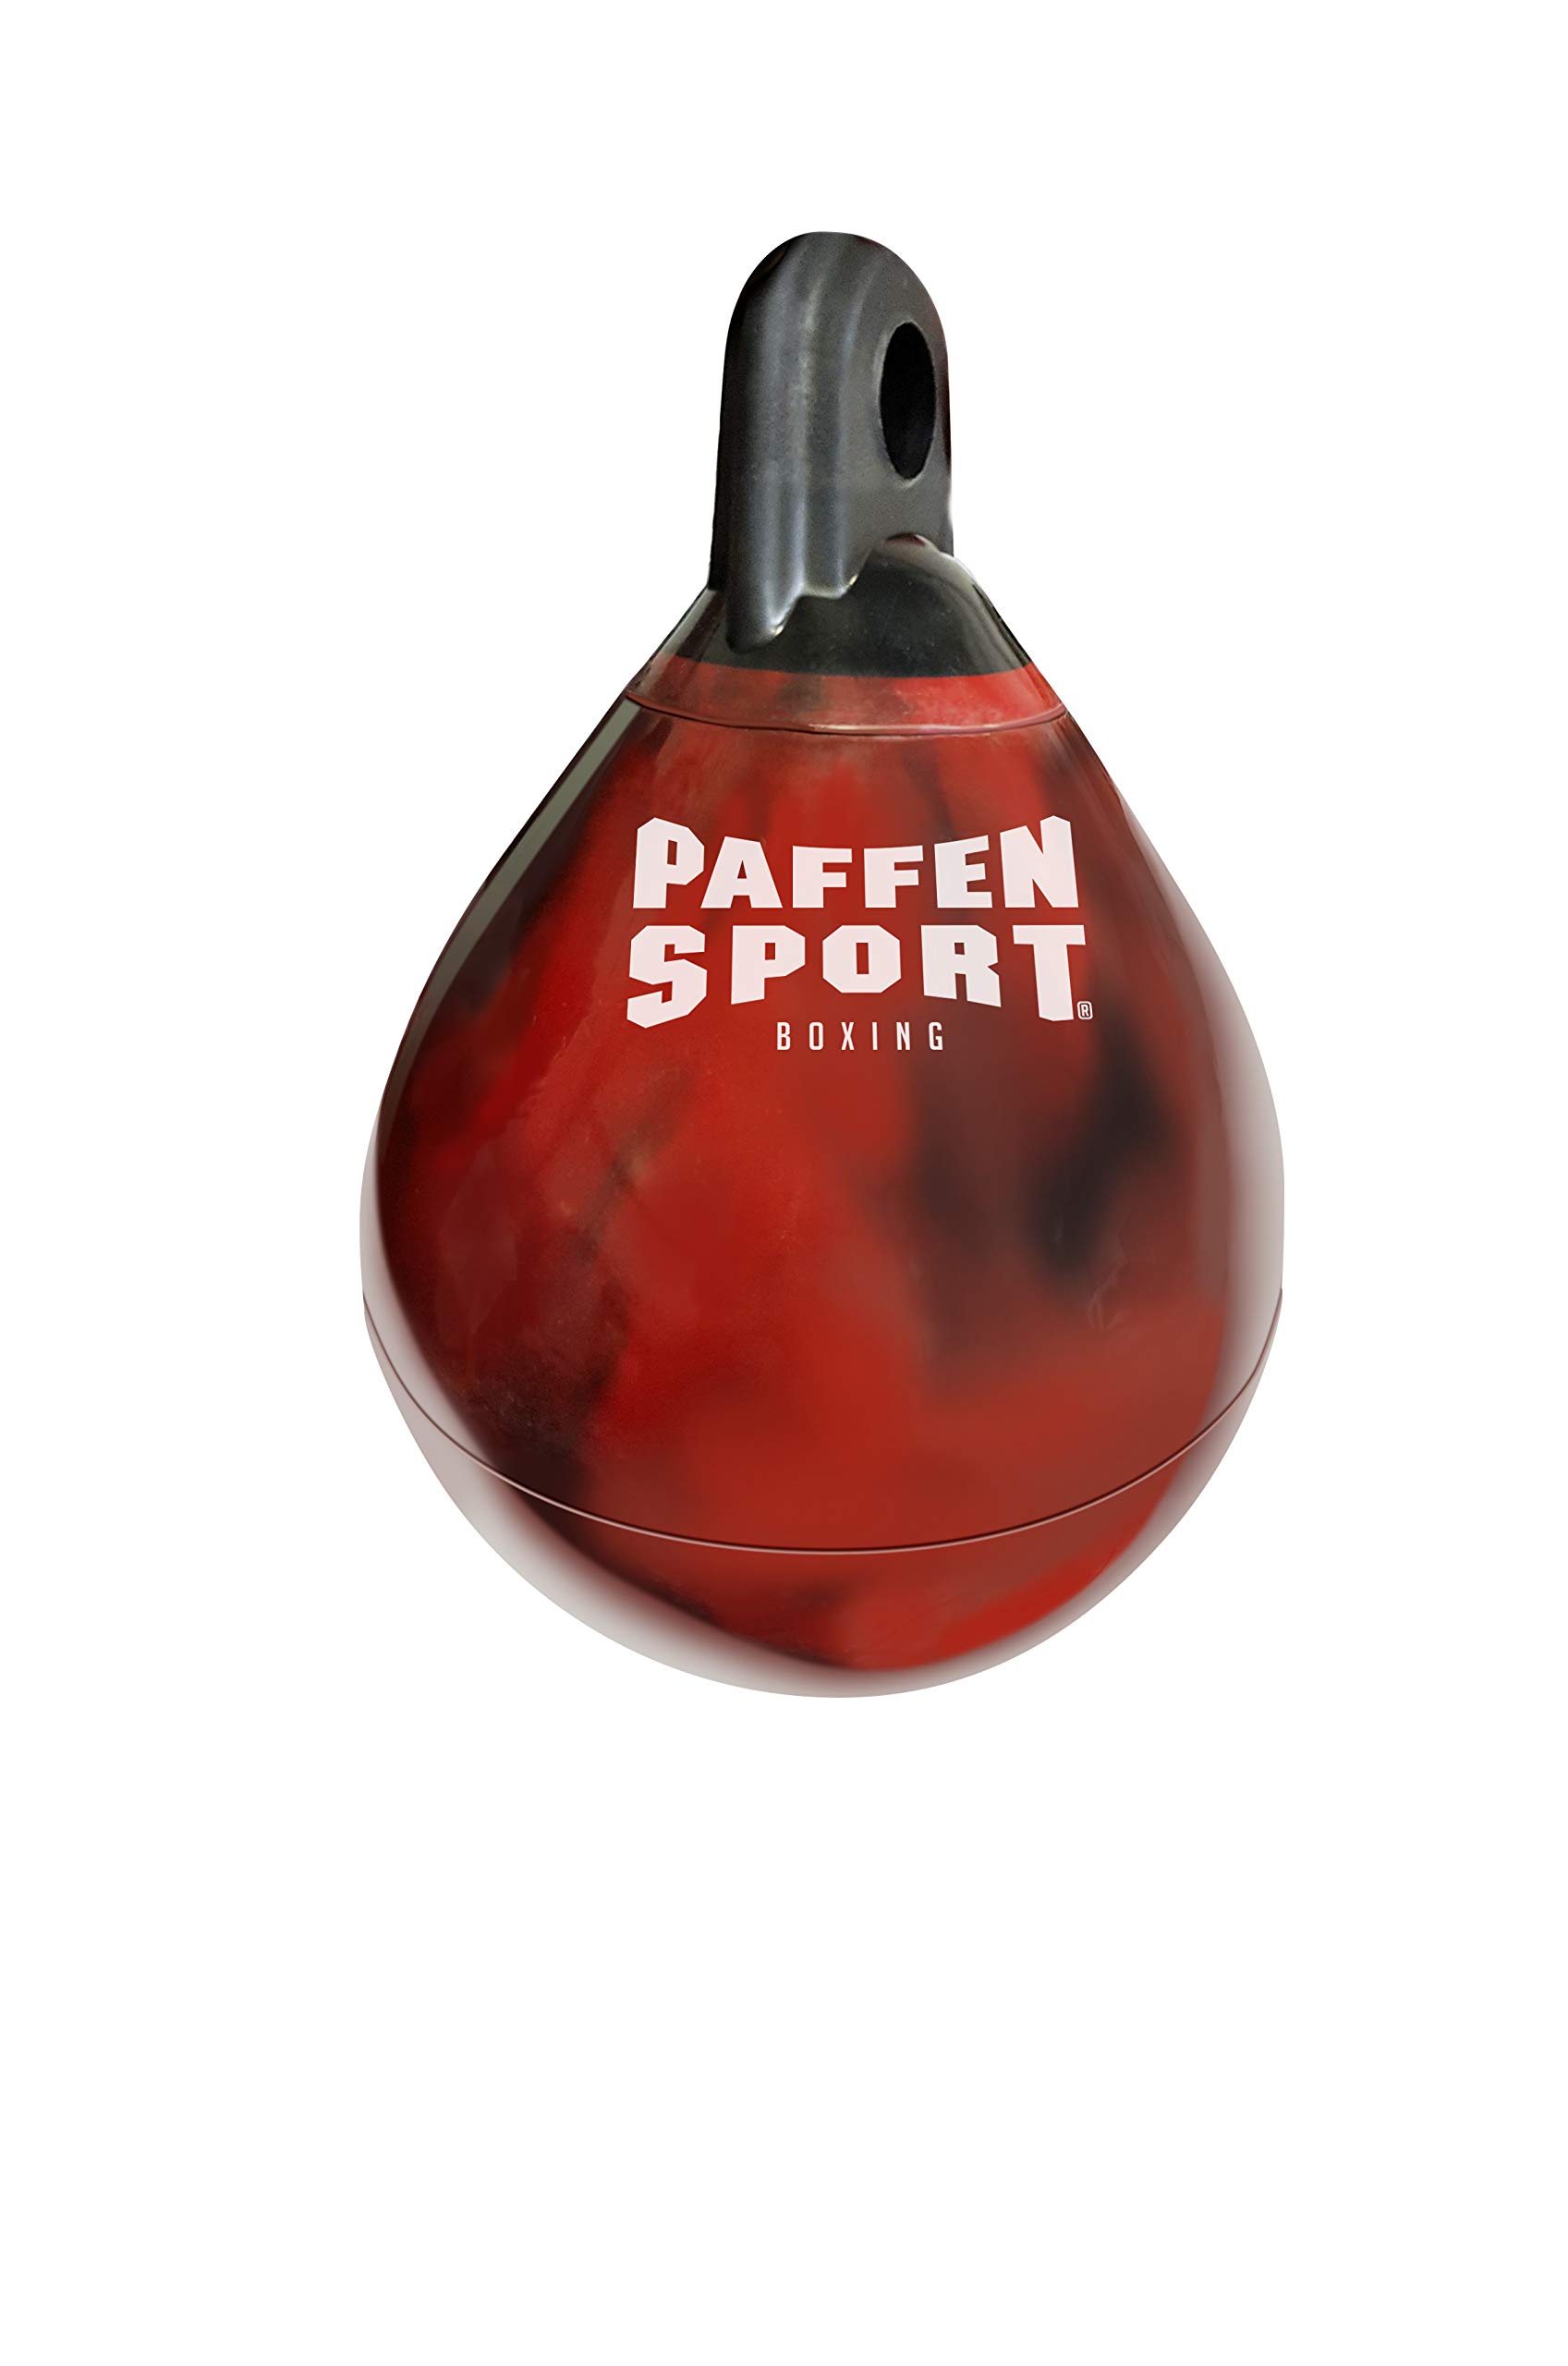 Paffen Sport Allround Waterbag – schwarz/rot – 50 cm x 38 cm Ø, 29 kg